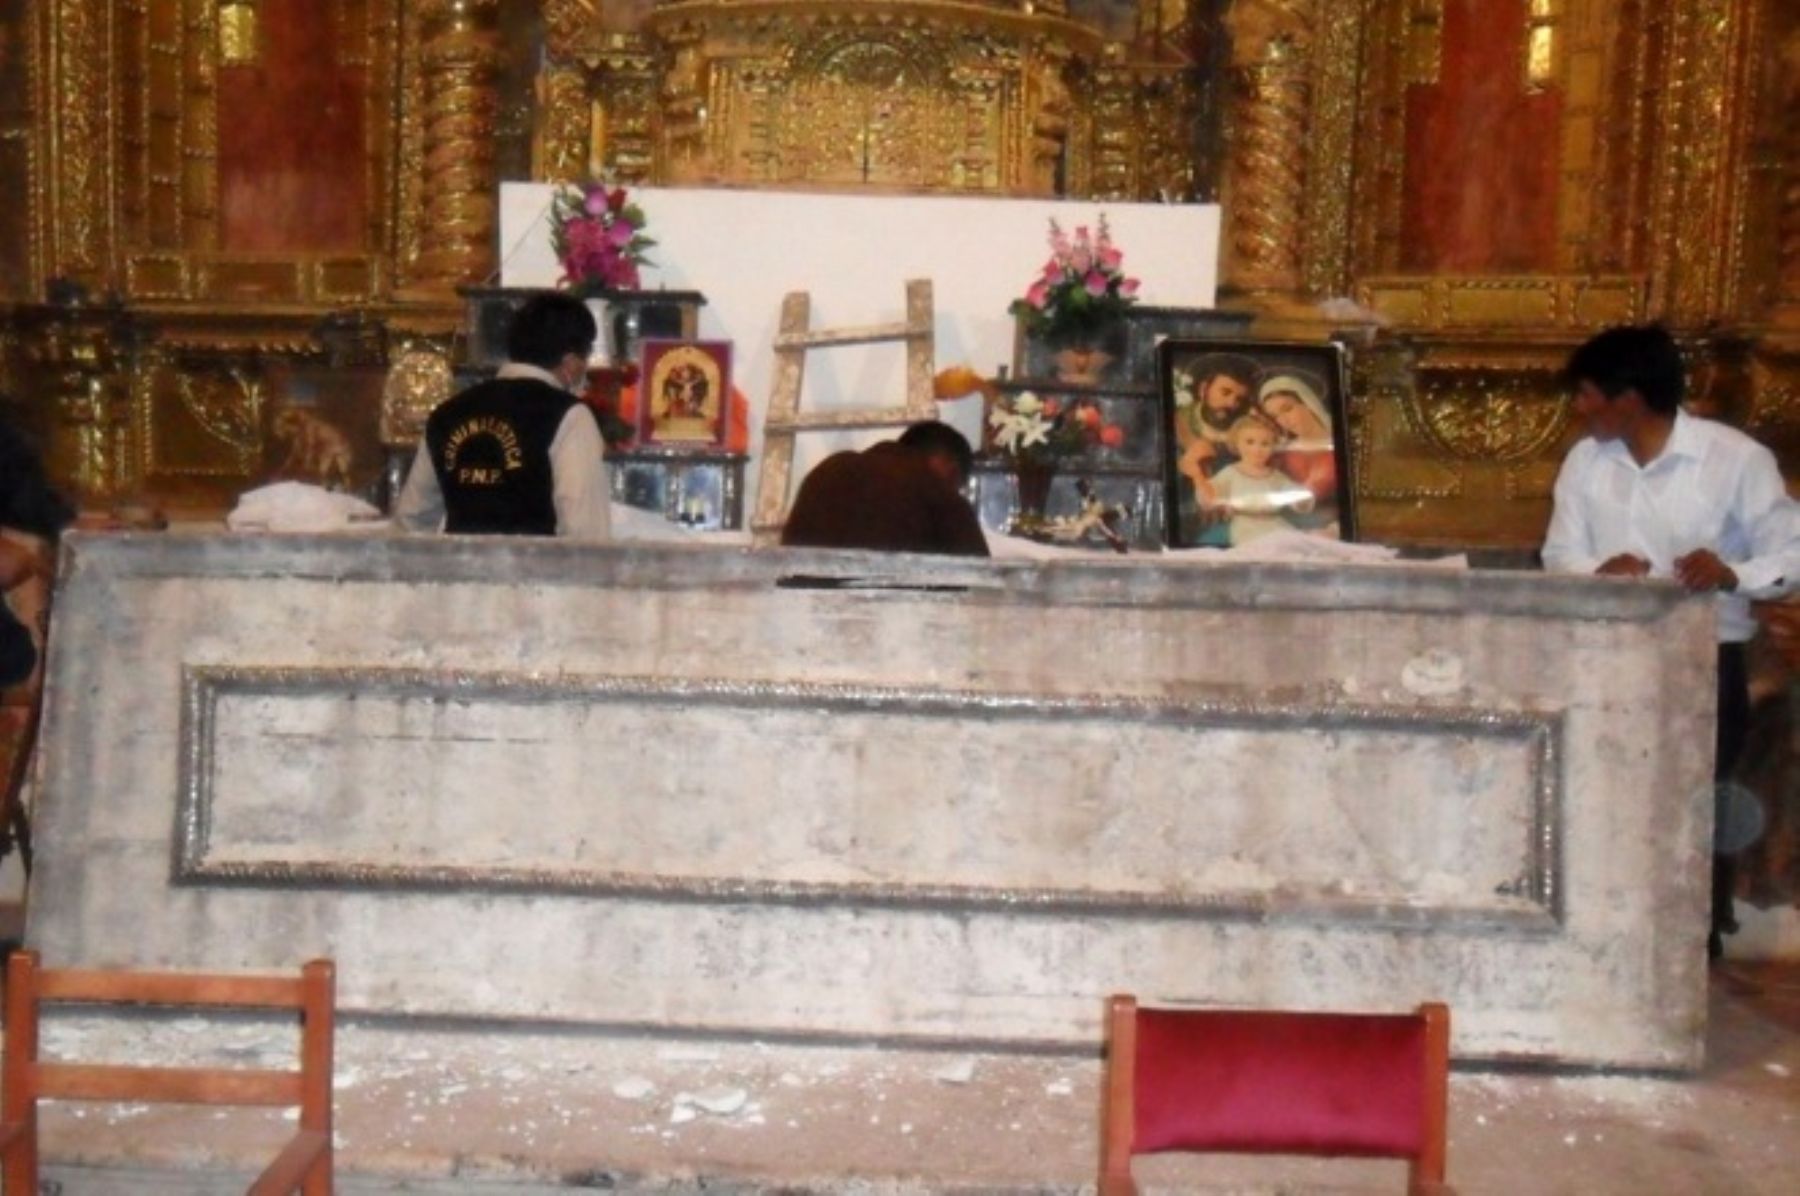 La policía investiga el robo sacrílego en el templo católico "Todos los Santos" en Acomayo, Cusco.